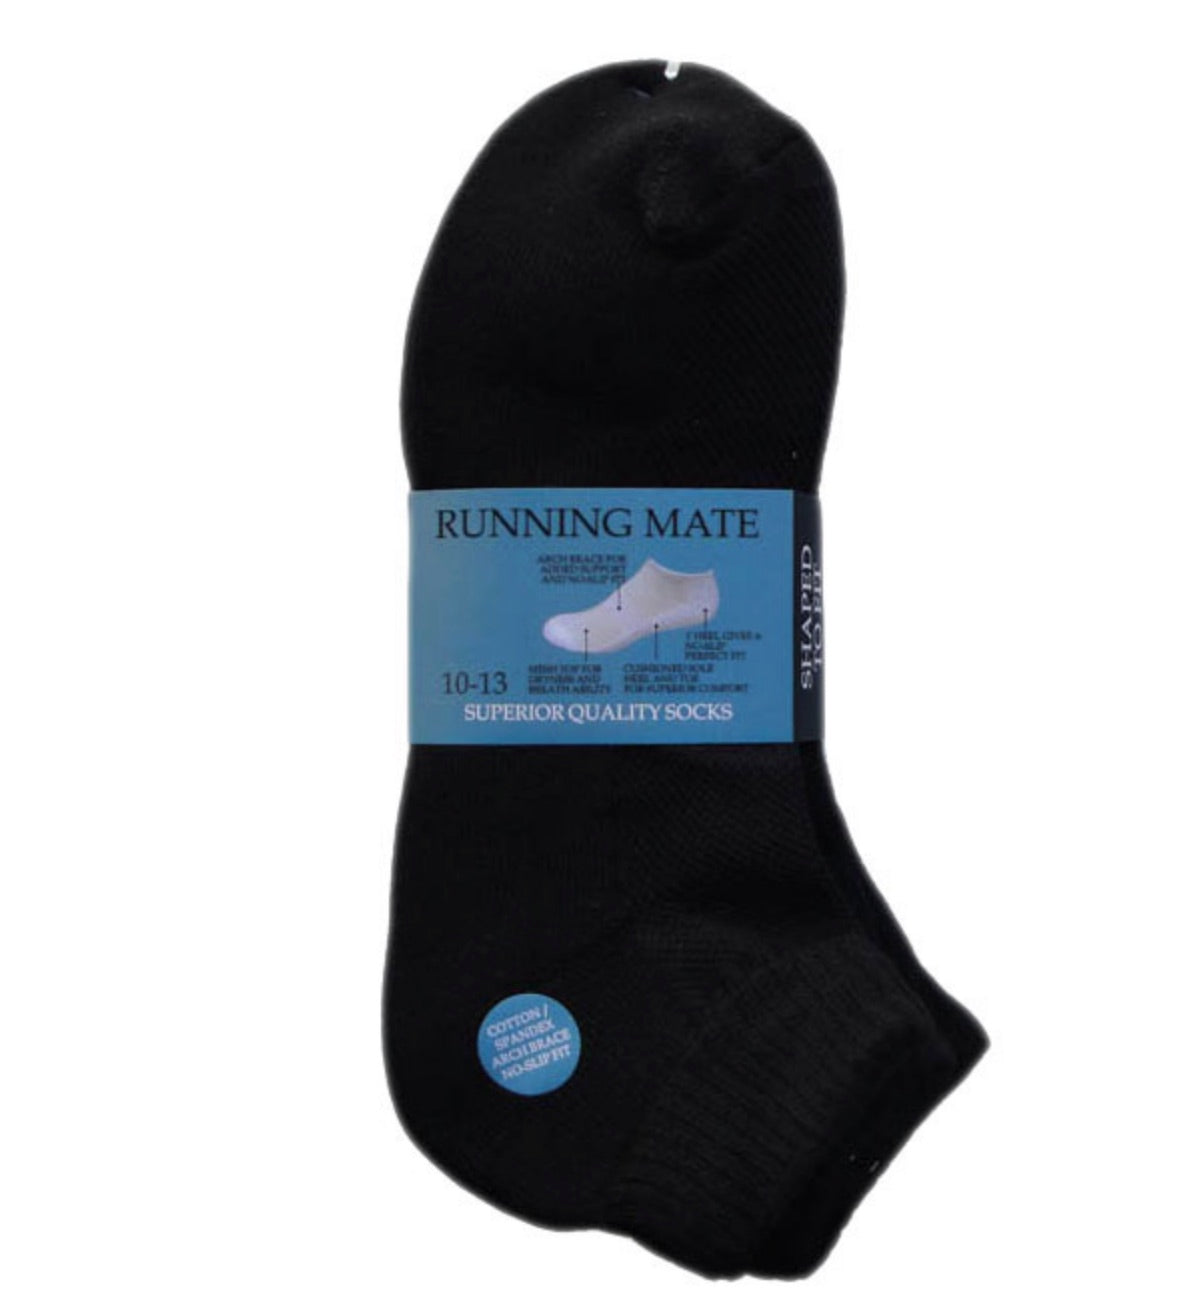 Running Mate Men's Athletic Quarter Socks - Size 10-13 - Black, 3 Pair